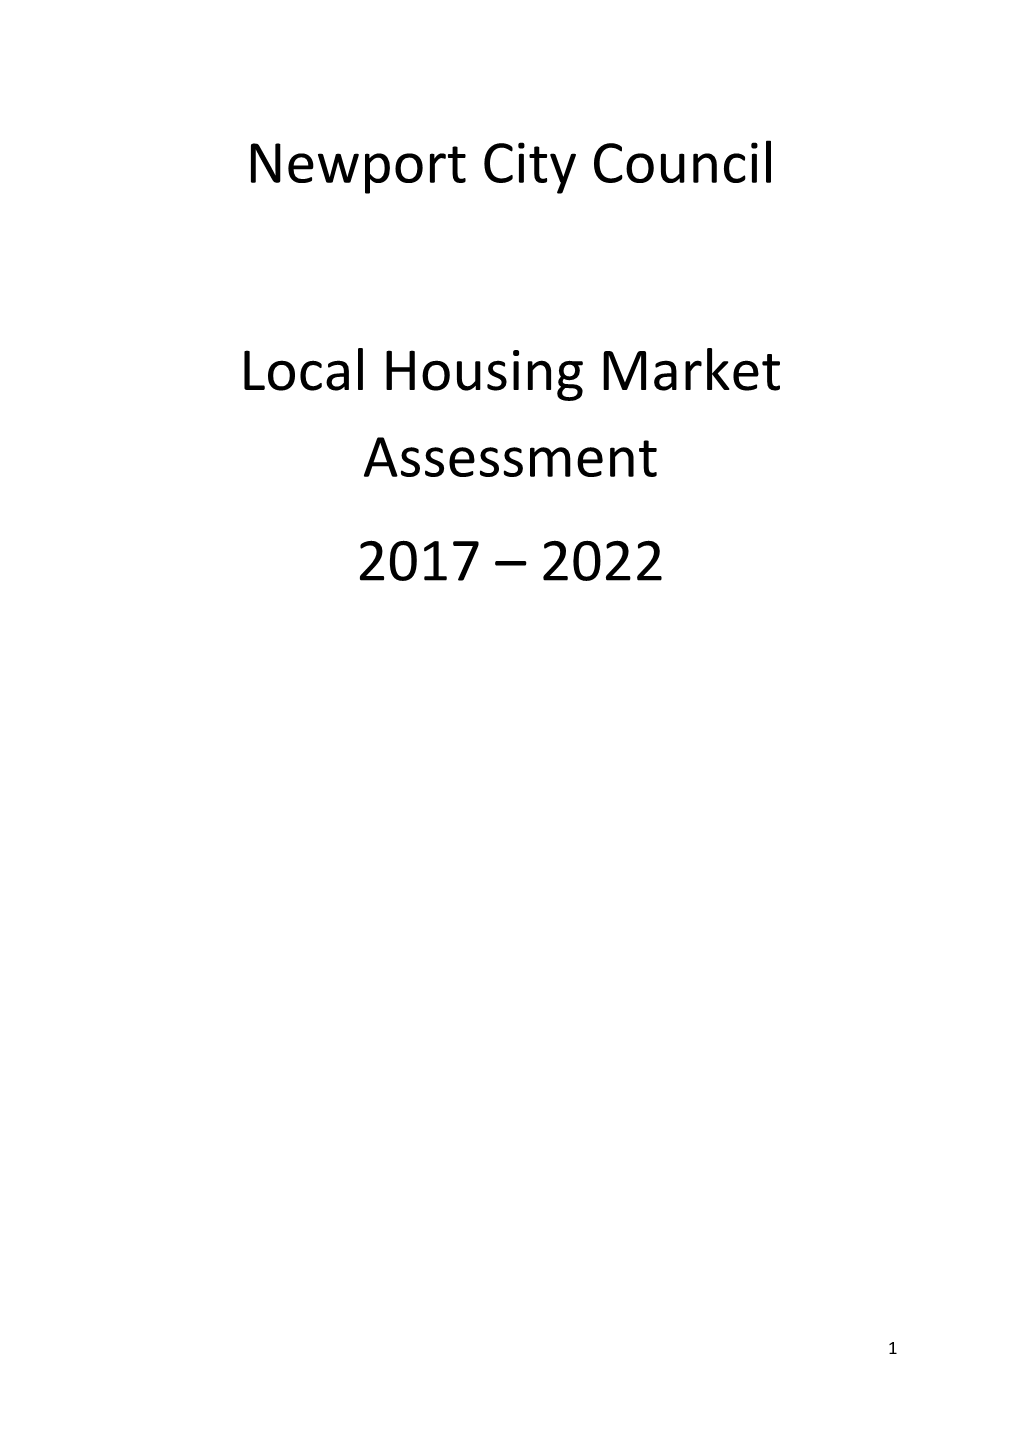 Newport City Council Local Housing Market Assessment 2017 – 2022